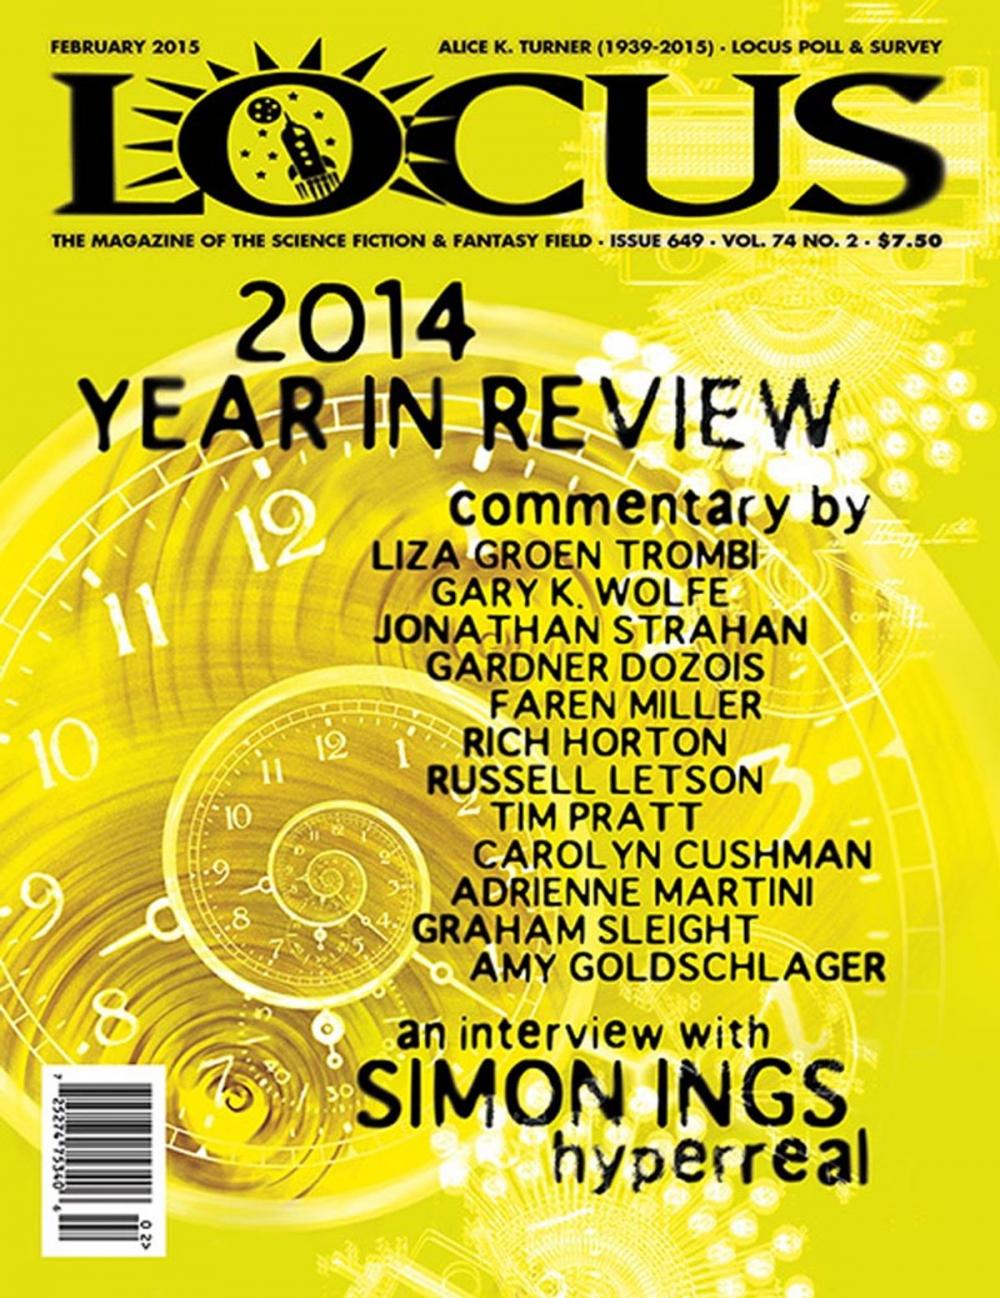 Big bigCover of Locus Magazine Issue #649 February 2015